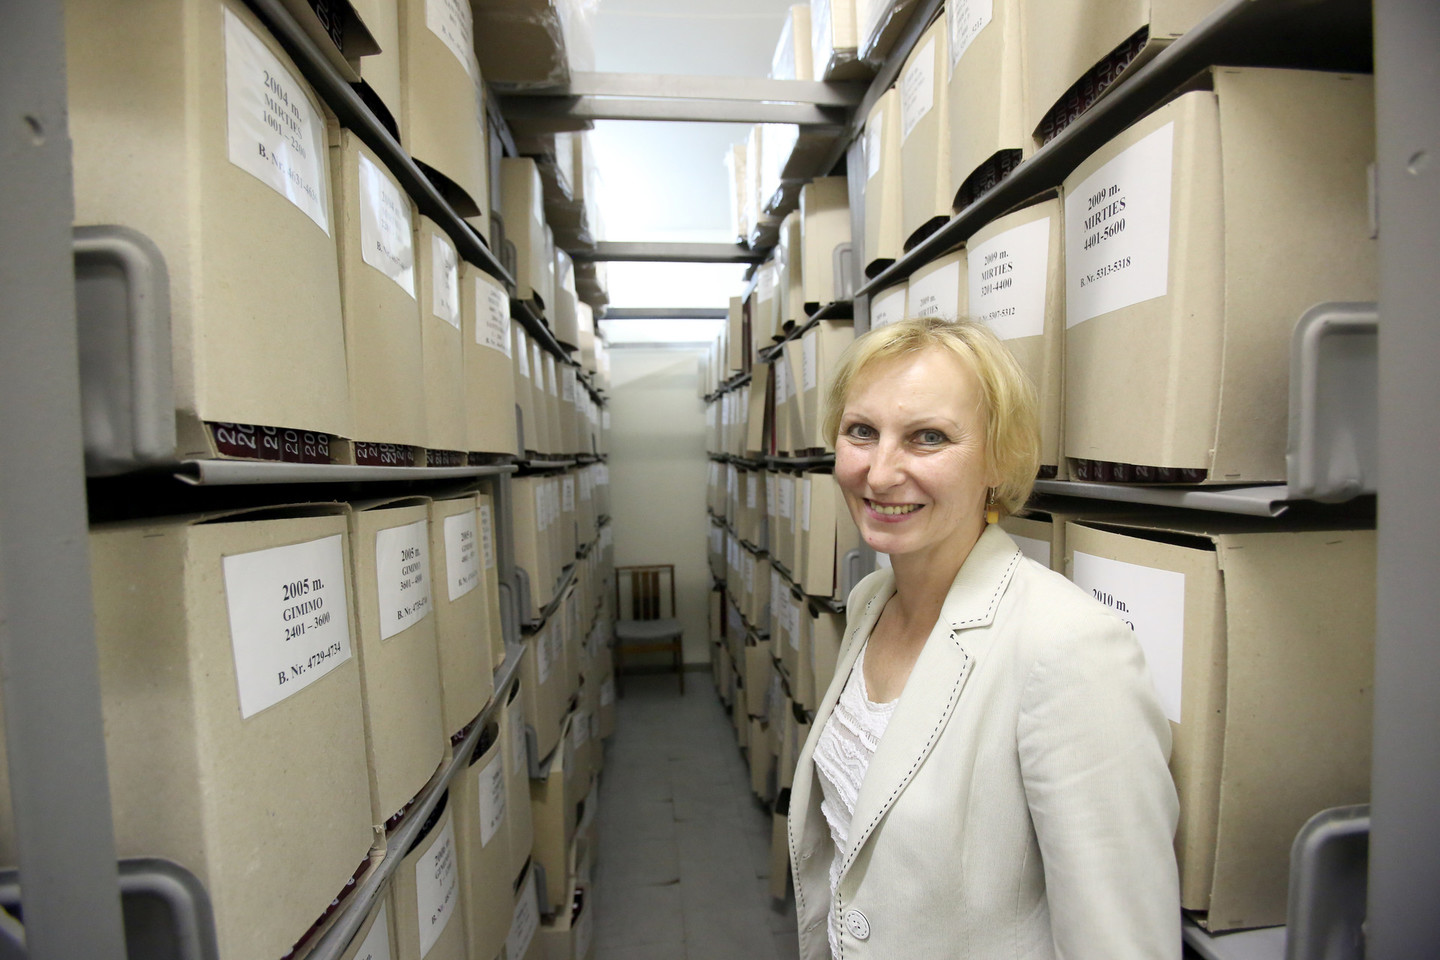 Santuokų rūmų archyve saugoma apie 30 milijonų įrašų.<br>R.Danisevičiaus nuotr.